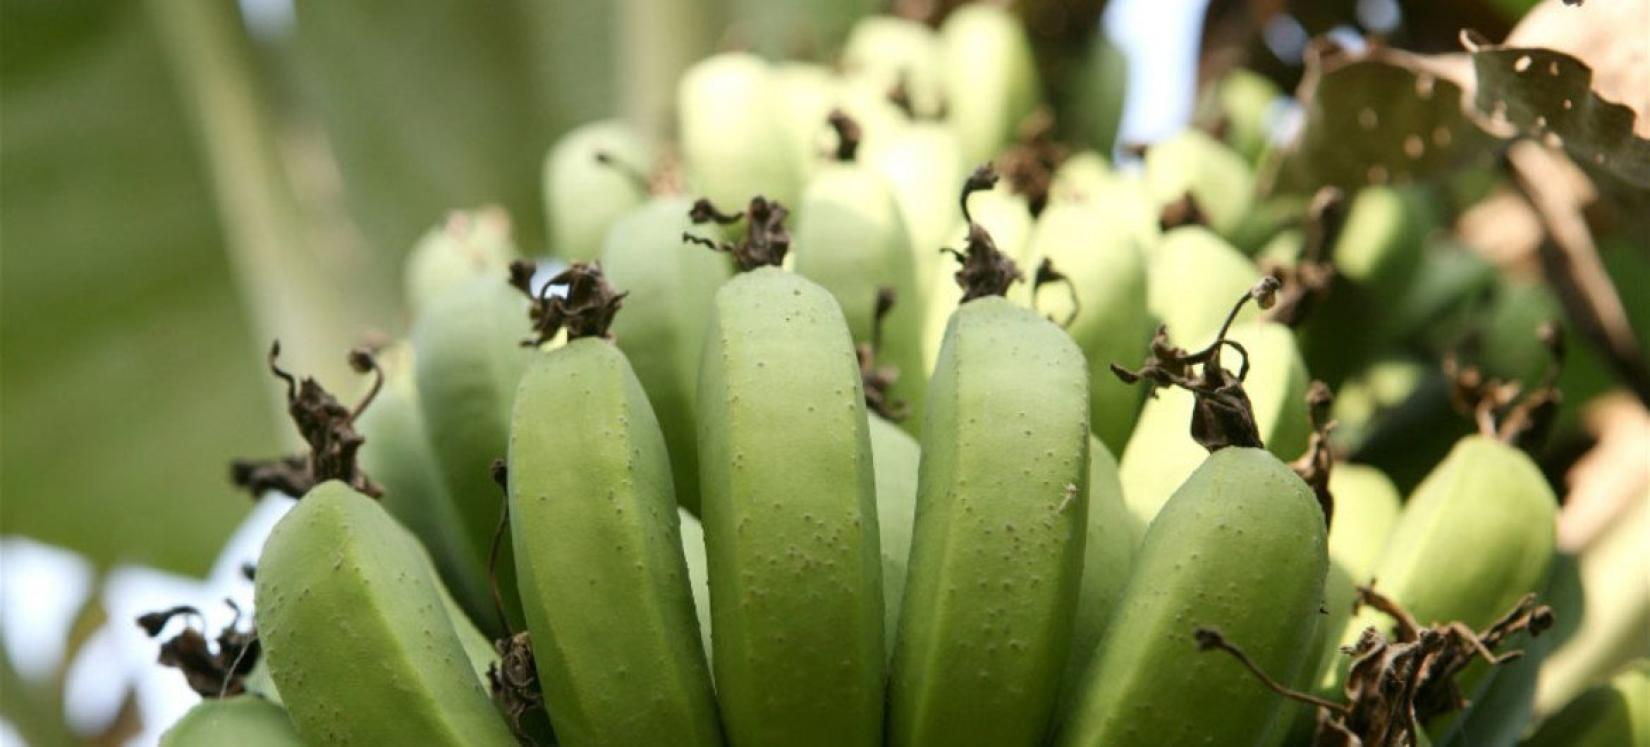 Banana, uma fonte essencial de alimentos, renda para as famílias e receitas de exportação.